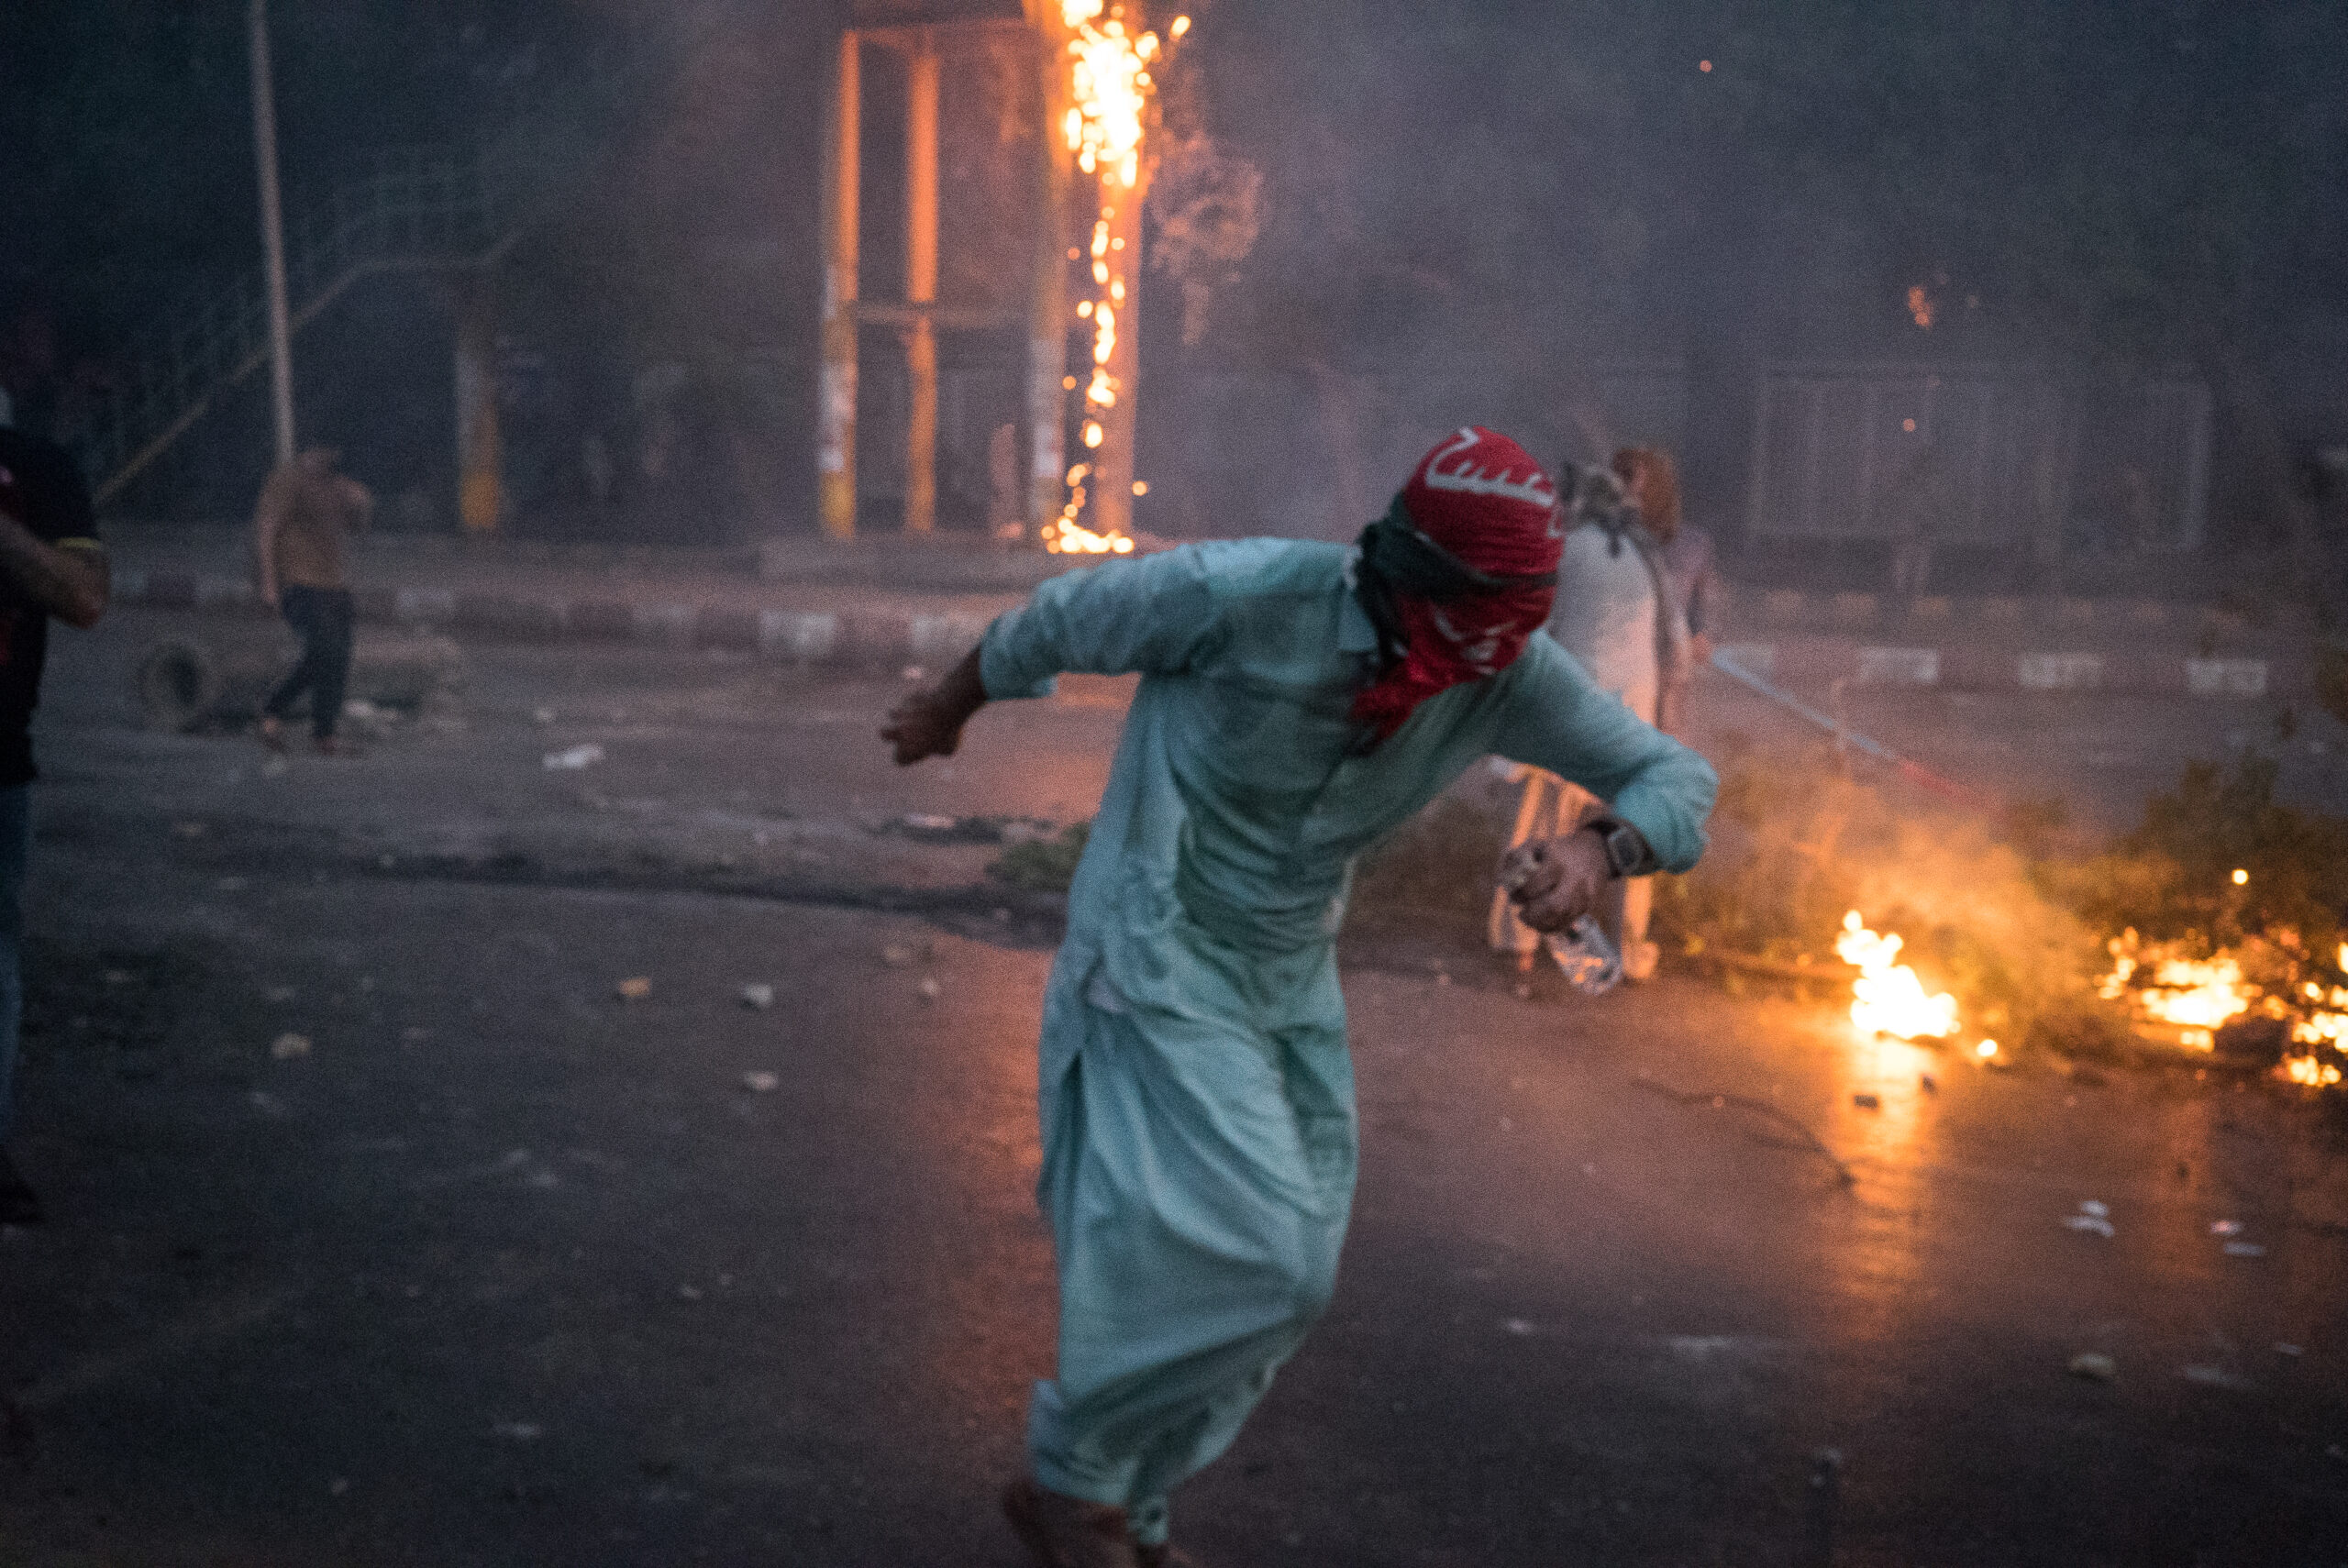 Partisan du PTI masqué par un foulard aux couleurs du parti, Karachi, 9 mai. © Laurent Gayer